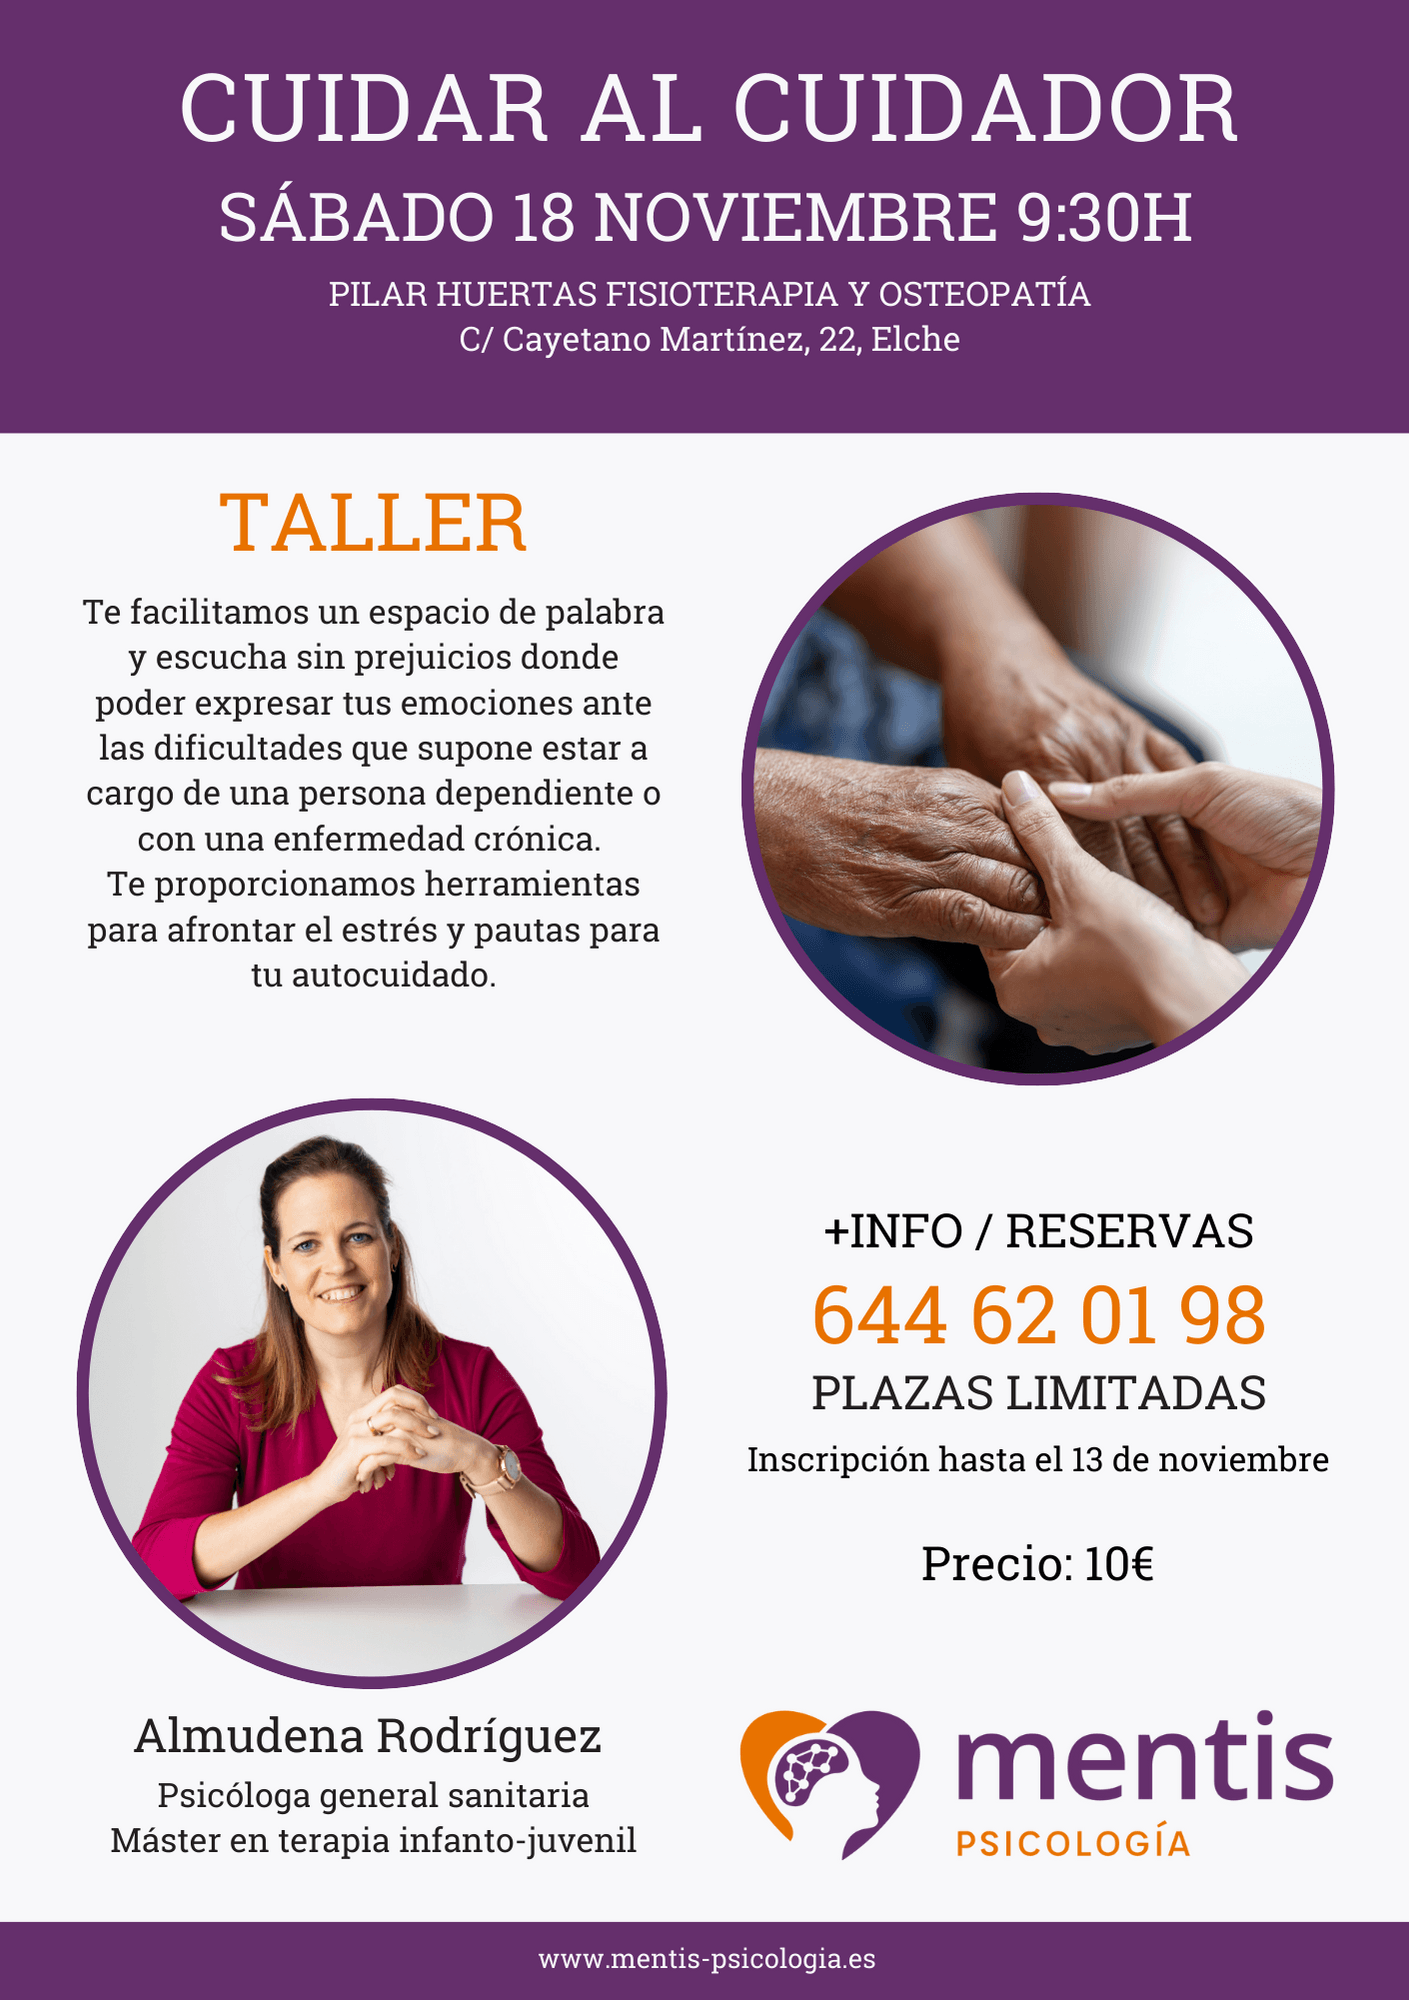 Taller "Cuidar al cuidador" - Gabinete Mentis Psicología en Elche, Alicante